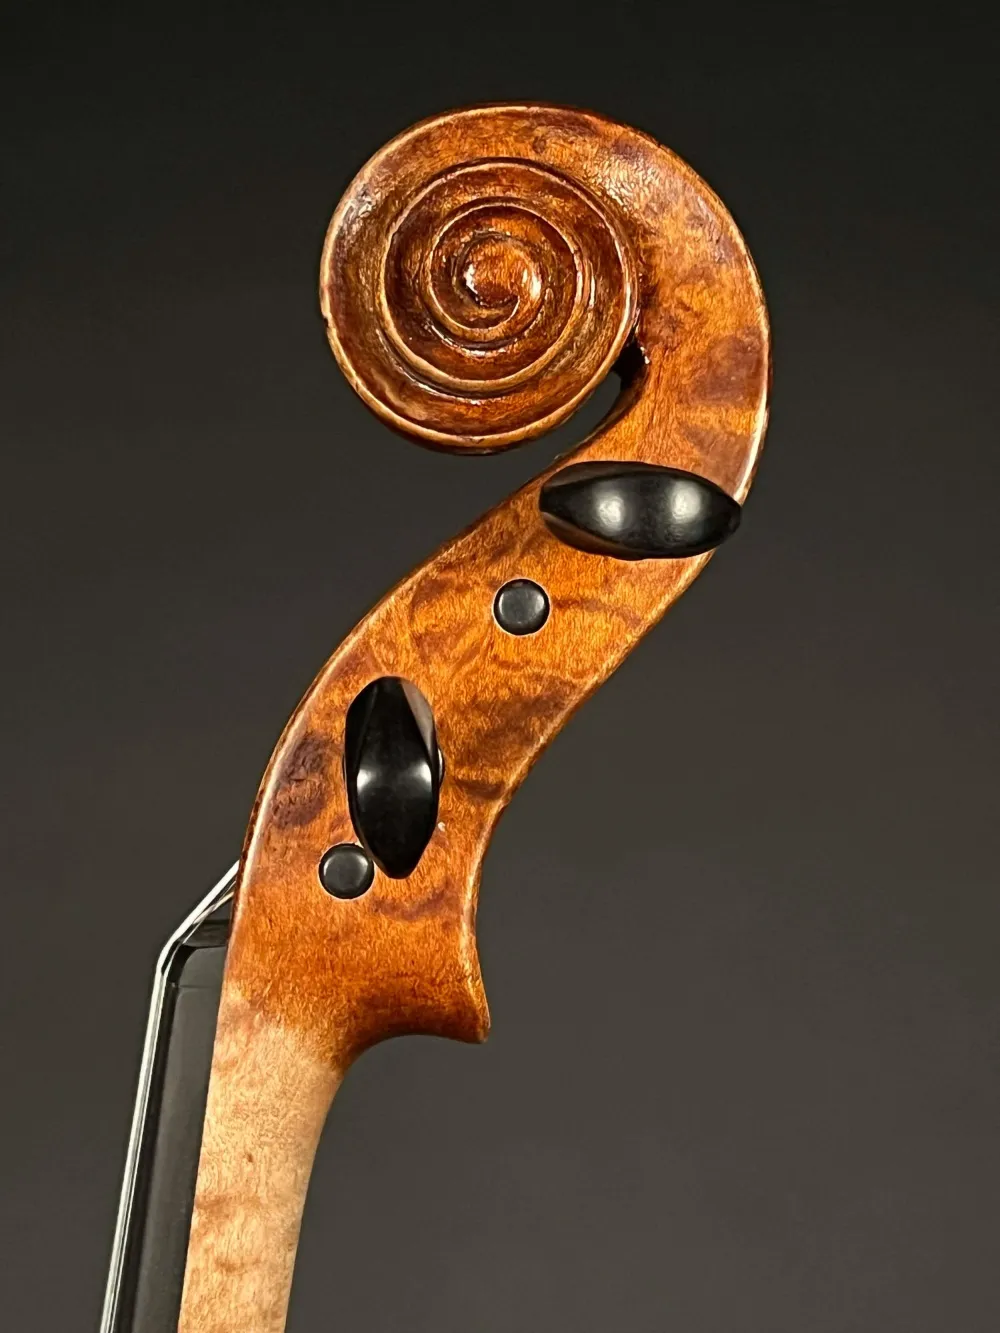 Schnecke-seitlich-links-Detailansicht einer Bucur Ioan Geige (Violine) Modell Maggini, Handarbeit 2019